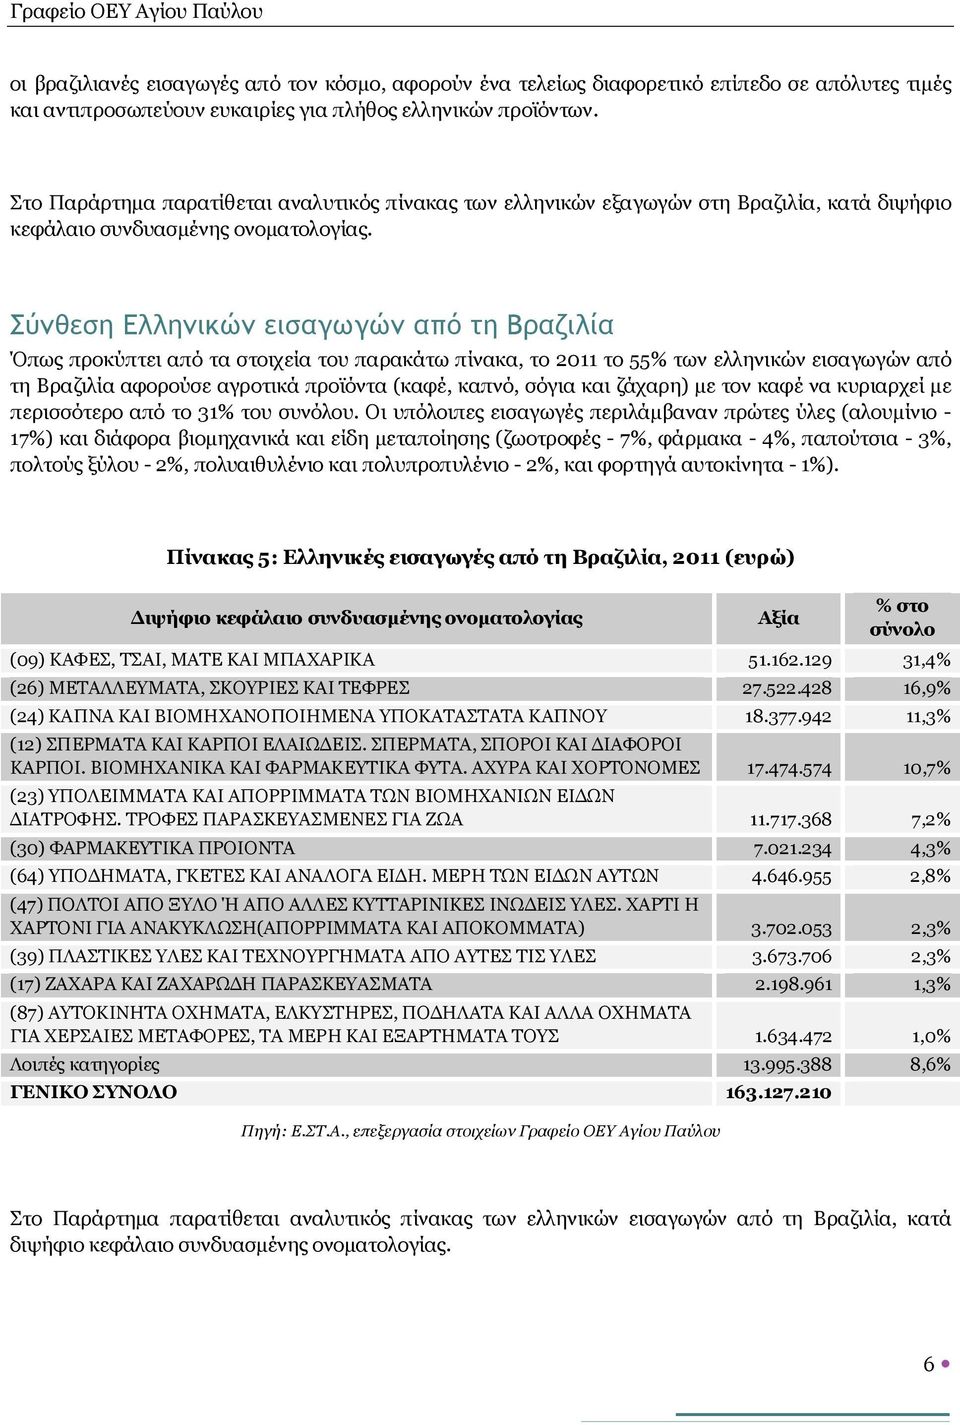 Σύνθεση Ελληνικών εισαγωγών από τη Βραζιλία Όπως προκύπτει από τα στοιχεία του παρακάτω πίνακα, το 2011 το 55% των ελληνικών εισαγωγών από τη Βραζιλία αφορούσε αγροτικά προϊόντα (καφέ, καπνό, σόγια